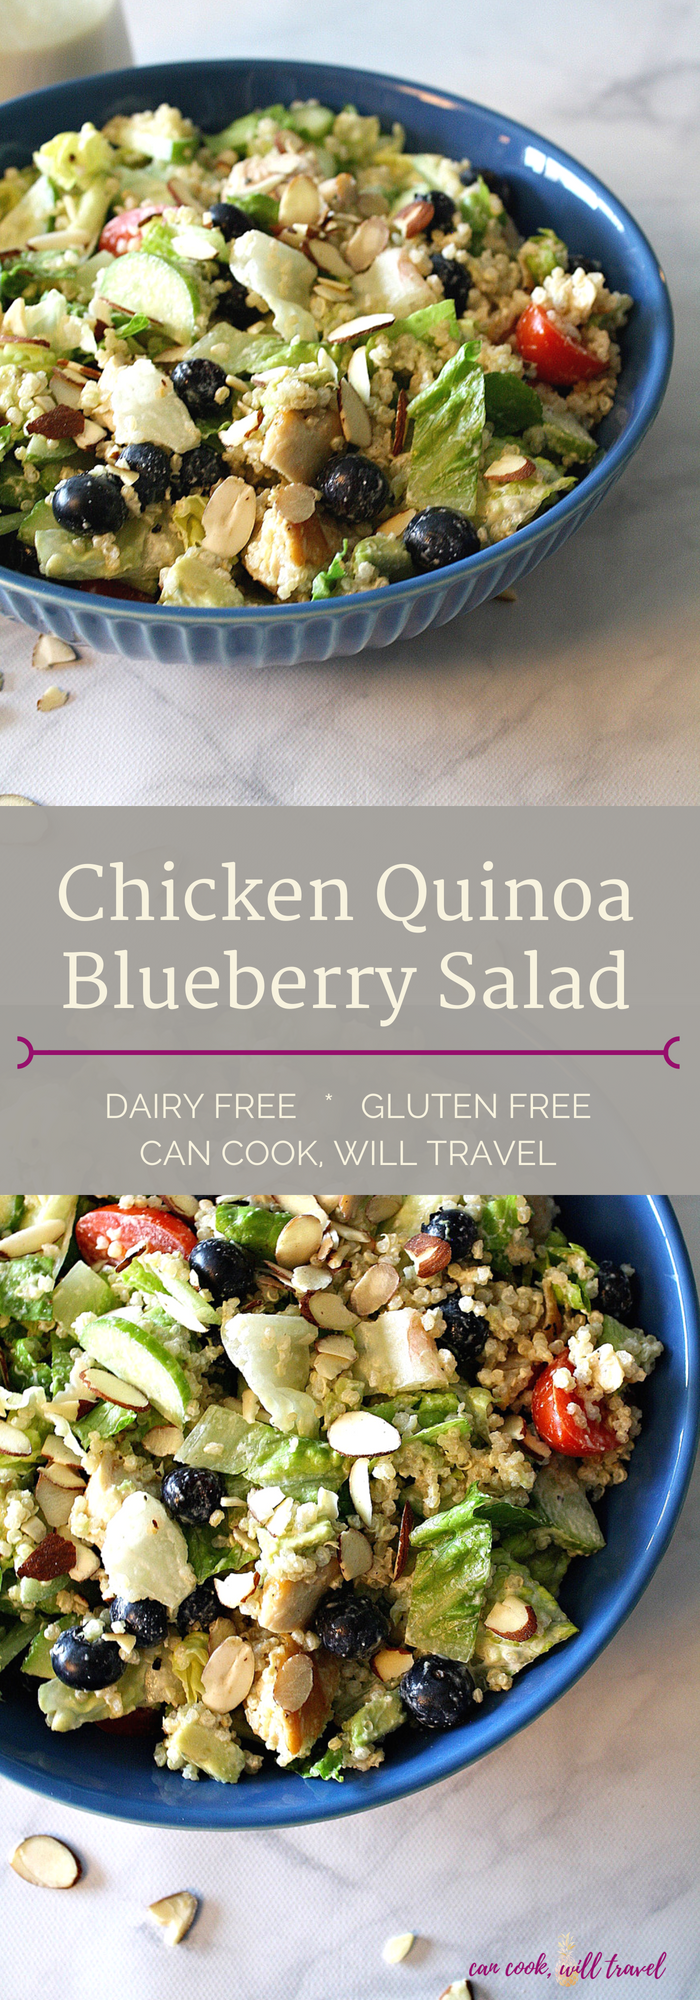 Chicken Quinoa Blueberry Salad_Collage1